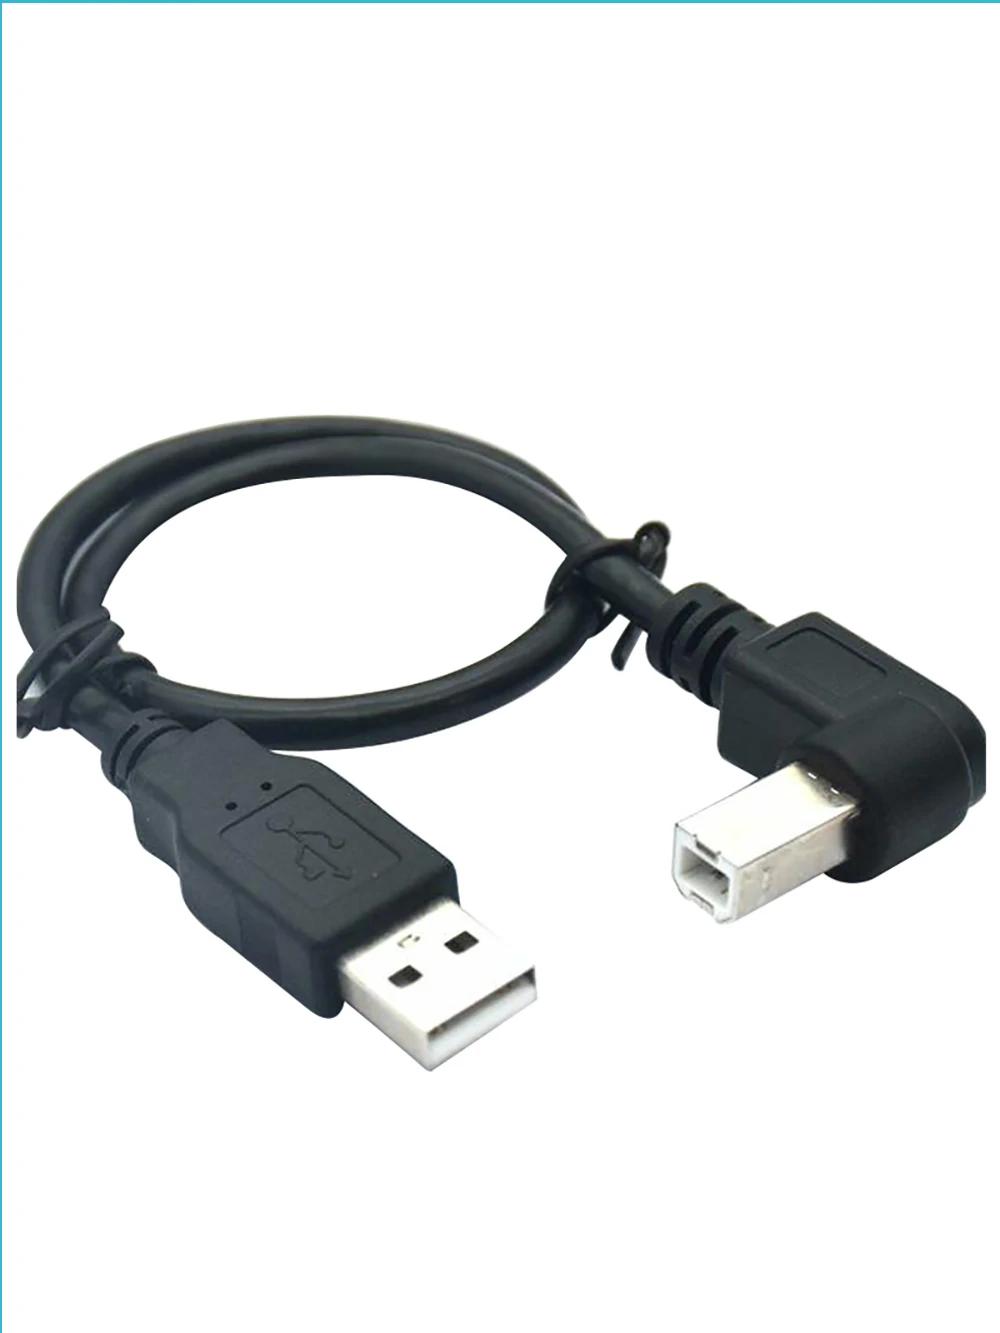 μ ε Ȳġ  콺  ,    Ȳġ,    2.0 A-USB B   